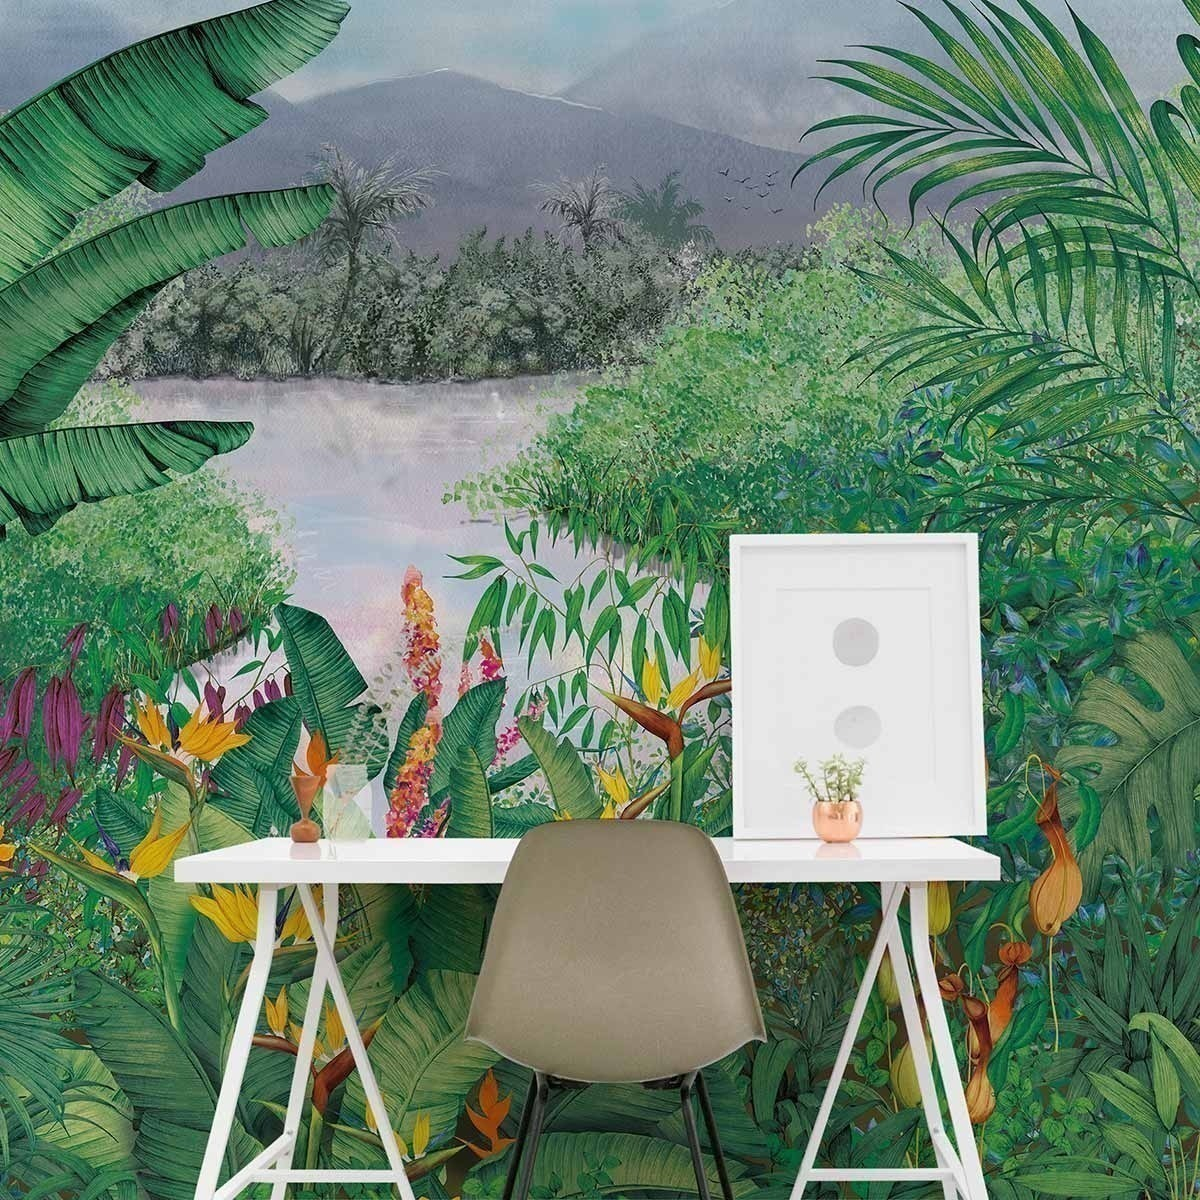 Panneau acoustique mural - format nature et feuille - Jungle Wall